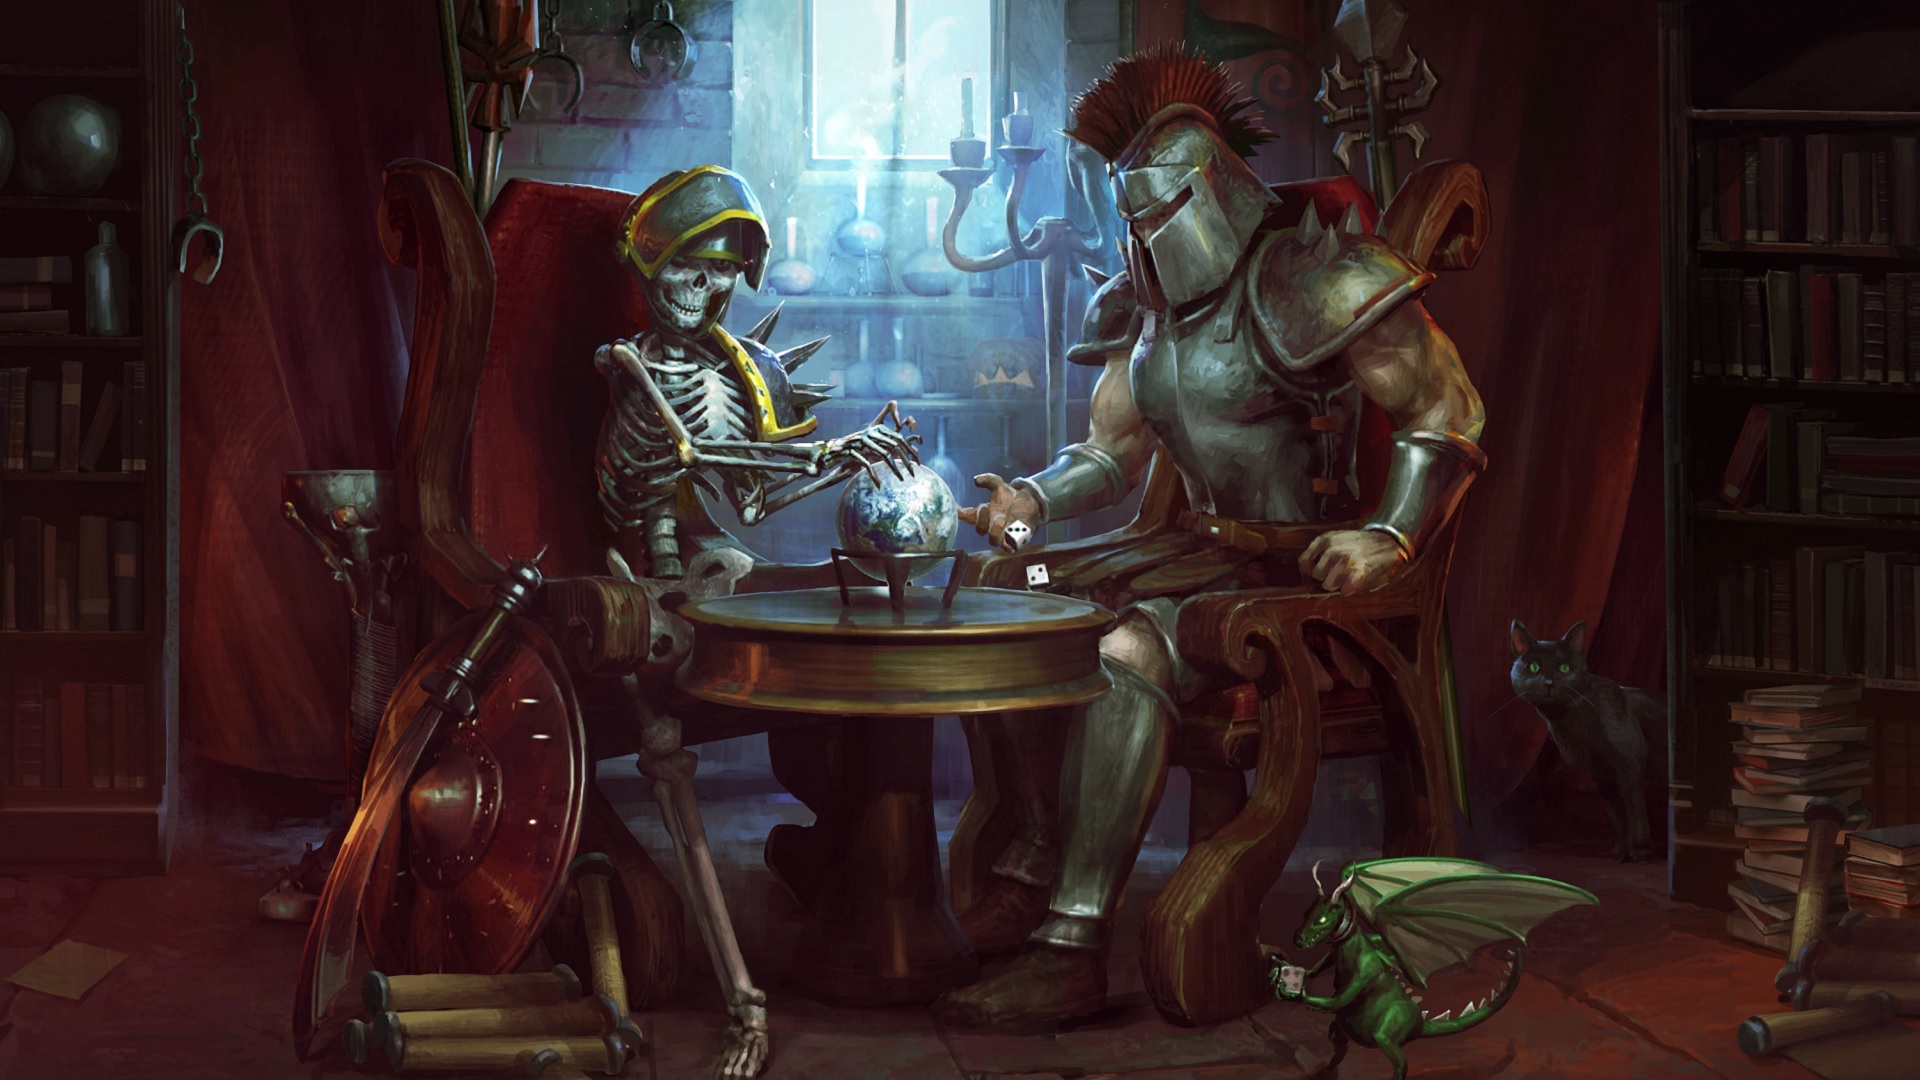 Migliori giochi per PC gratuiti: Runescape. L'immagine mostra un cavaliere e uno scheletro a un tavolo insieme. Lo scheletro è vivo